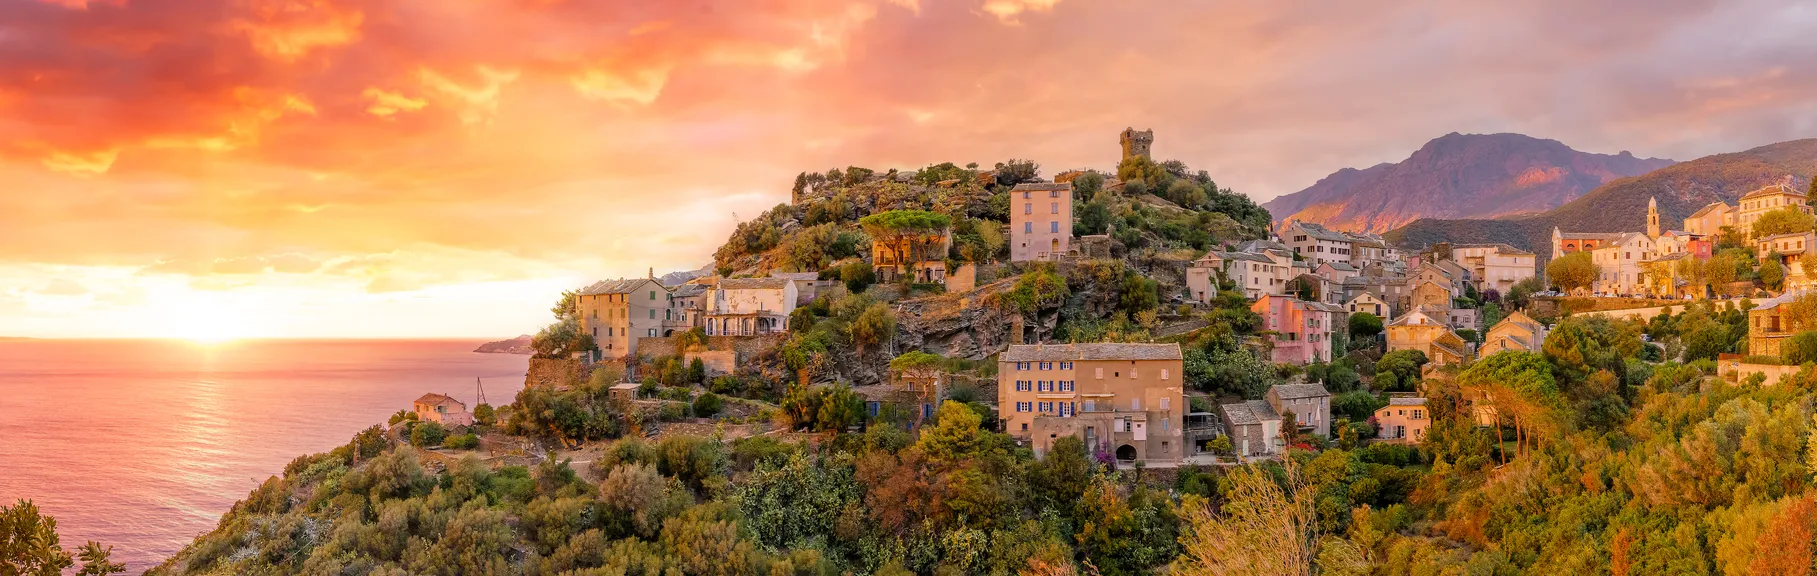 Le village de Nonza en Corse, France | © iStock / Balate Dorin